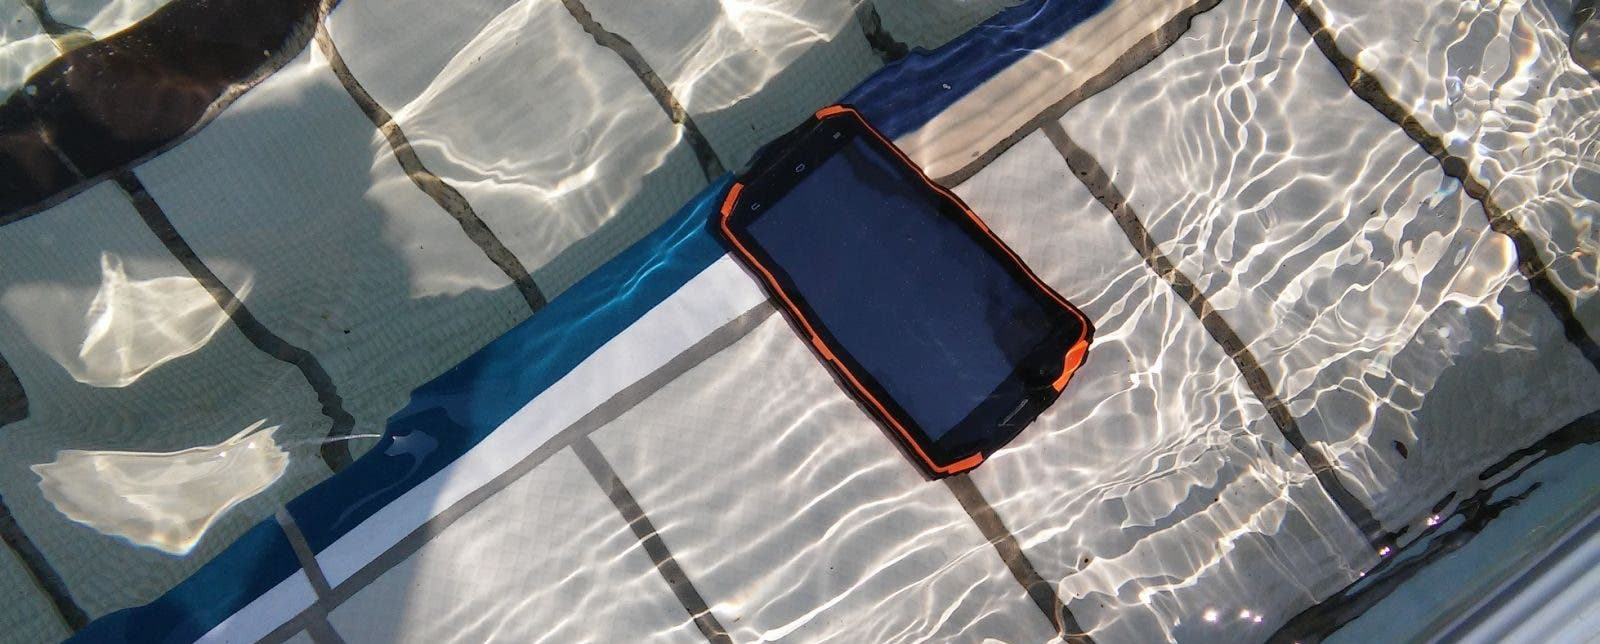 Vphone X3 unter Wasser